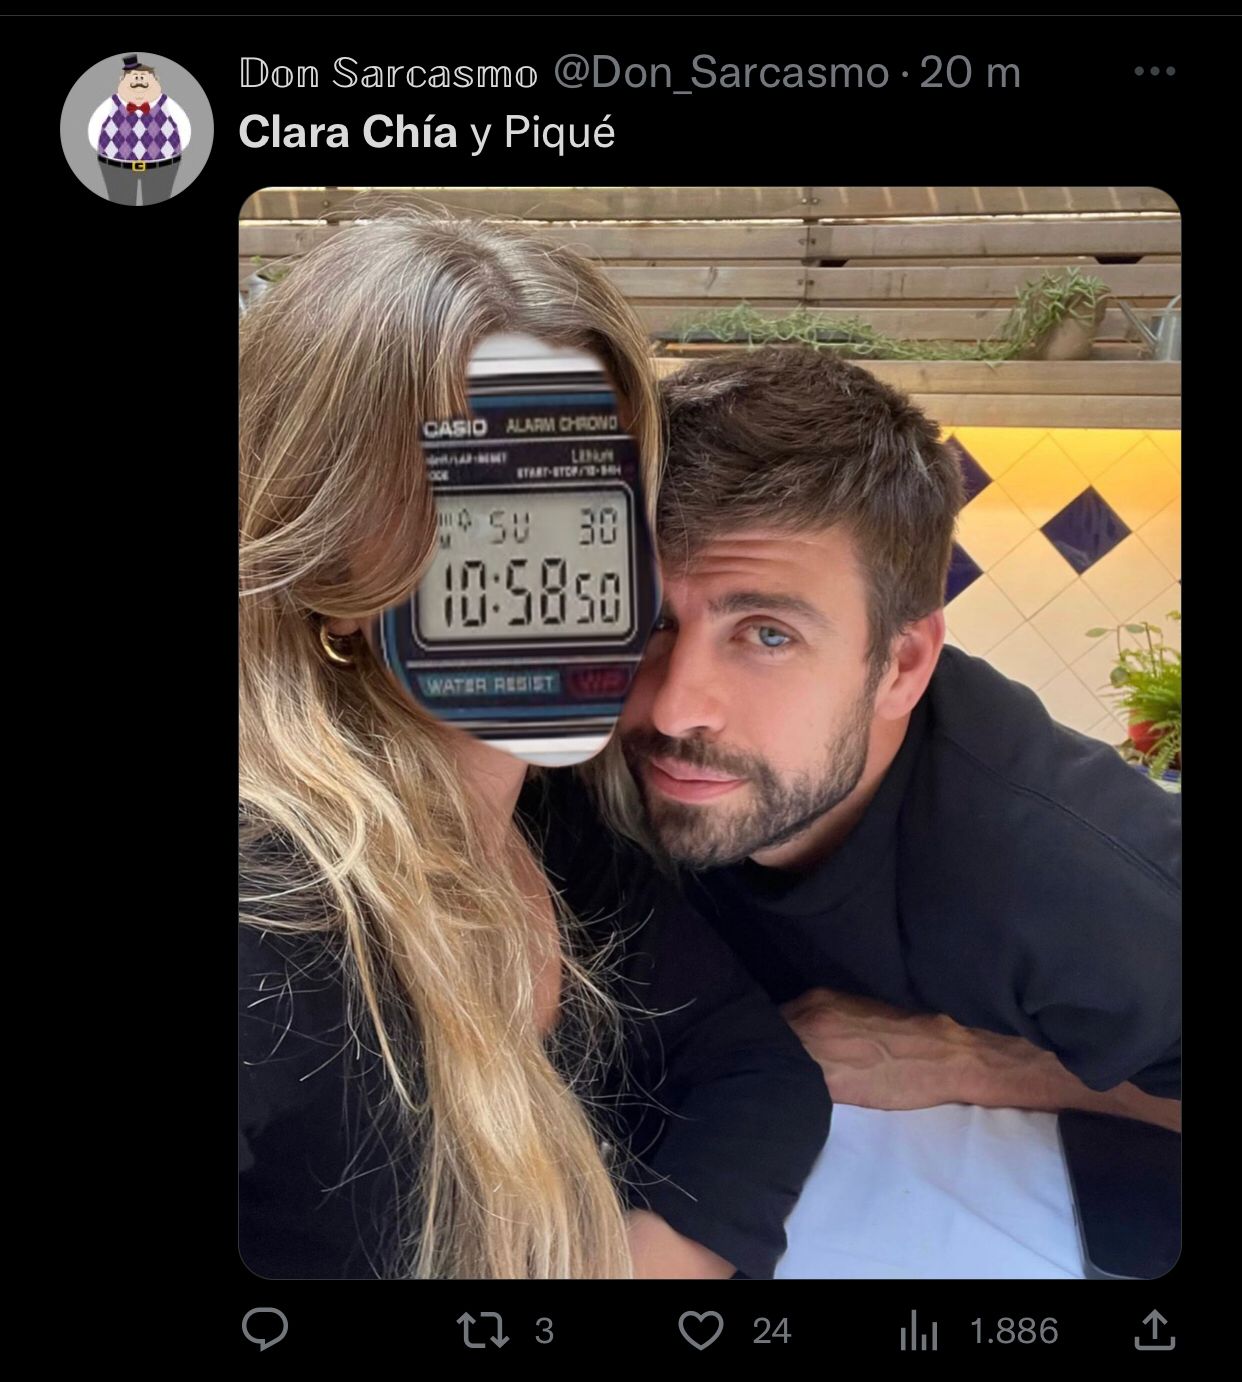 Jam tangan Casio di wajah Clara Chía (@Don_Sarcasmo/Twitter)